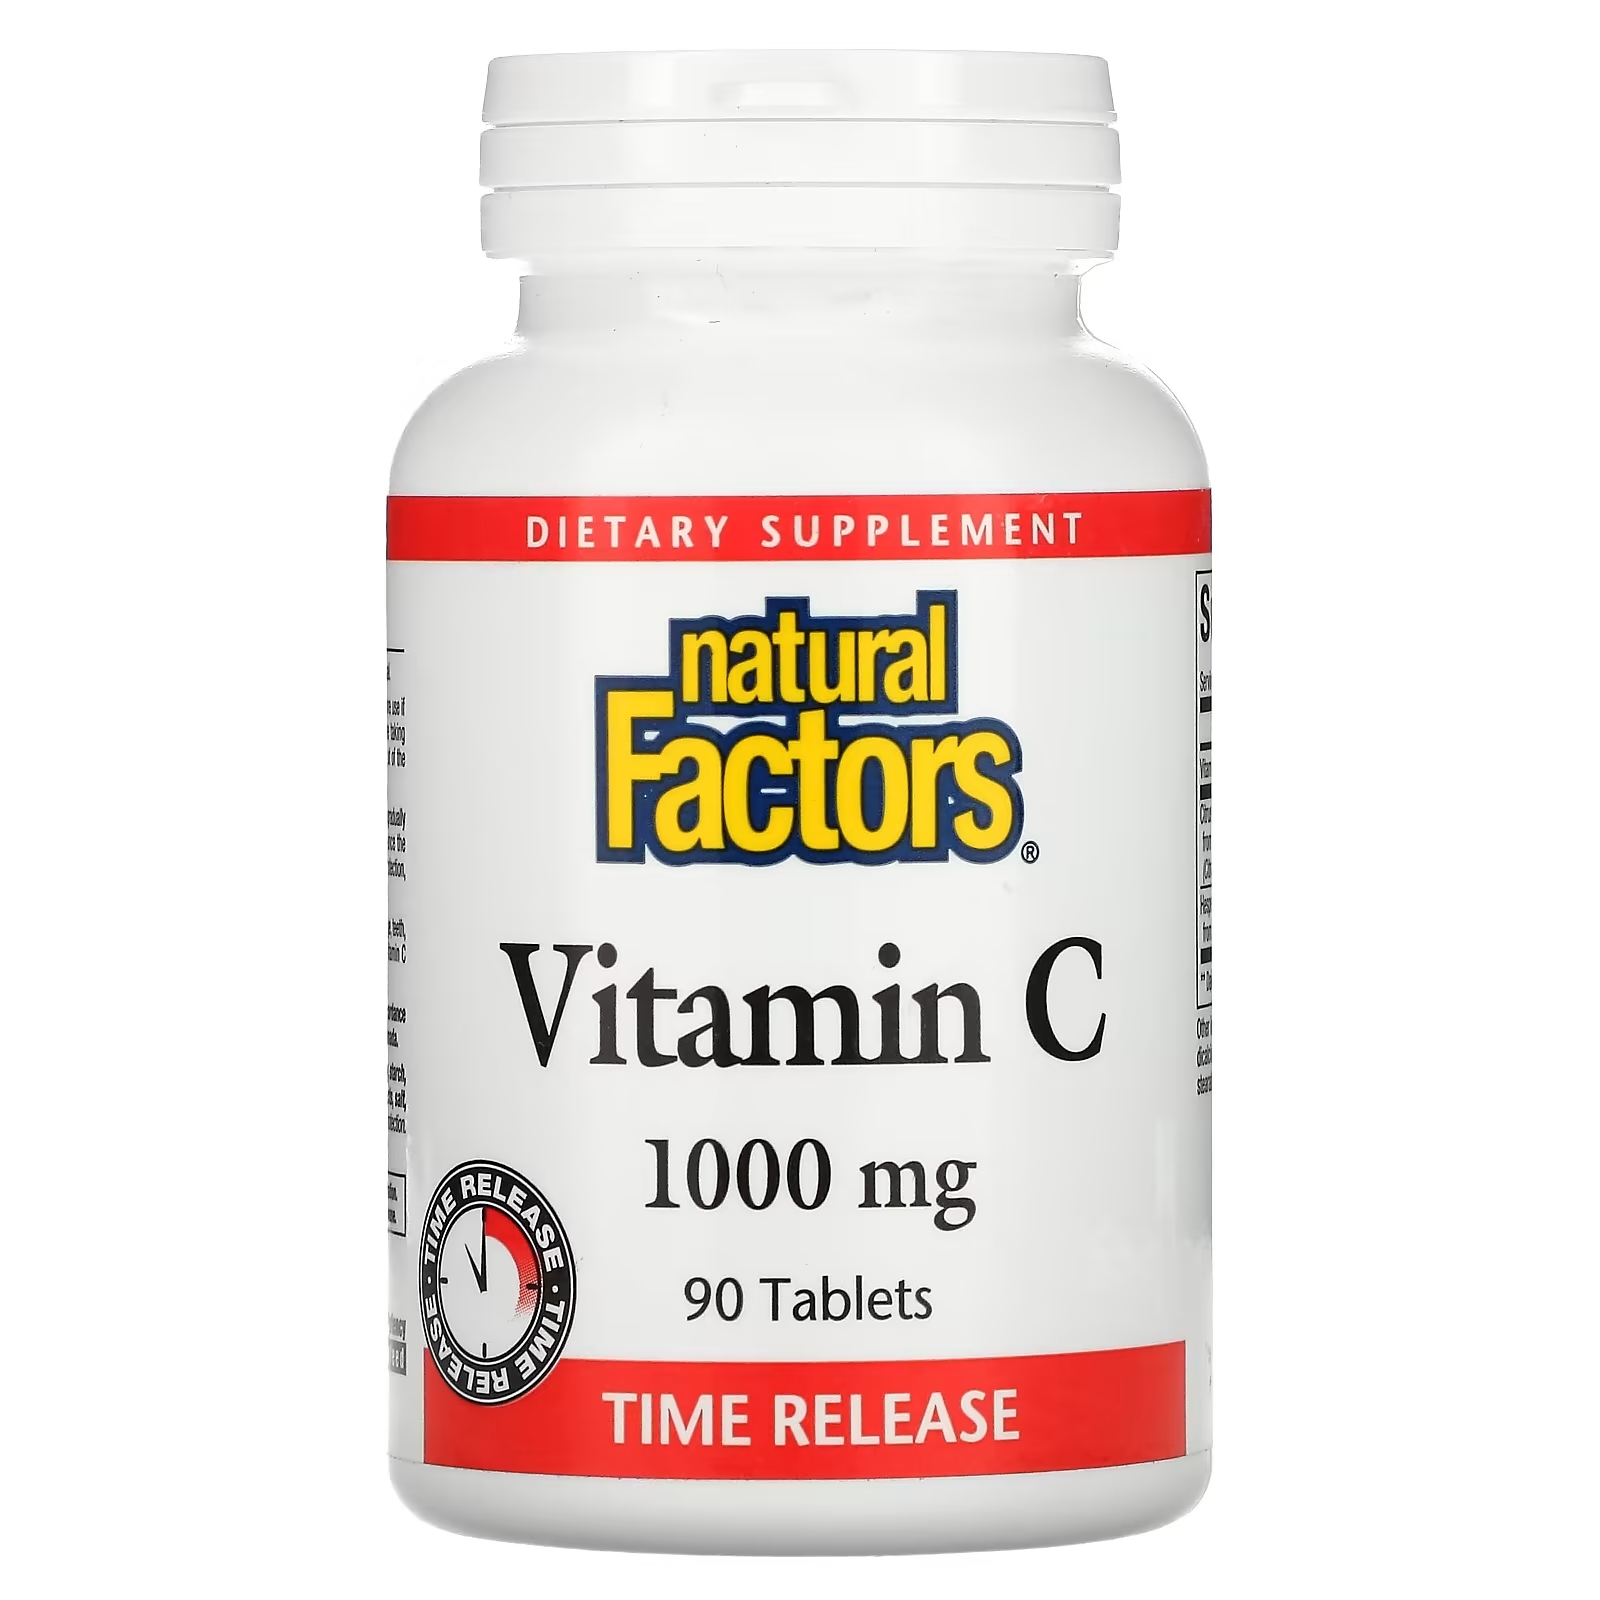 Natural Factors витамин C 1000 мг с медленным высвобождением, 90 таблеток